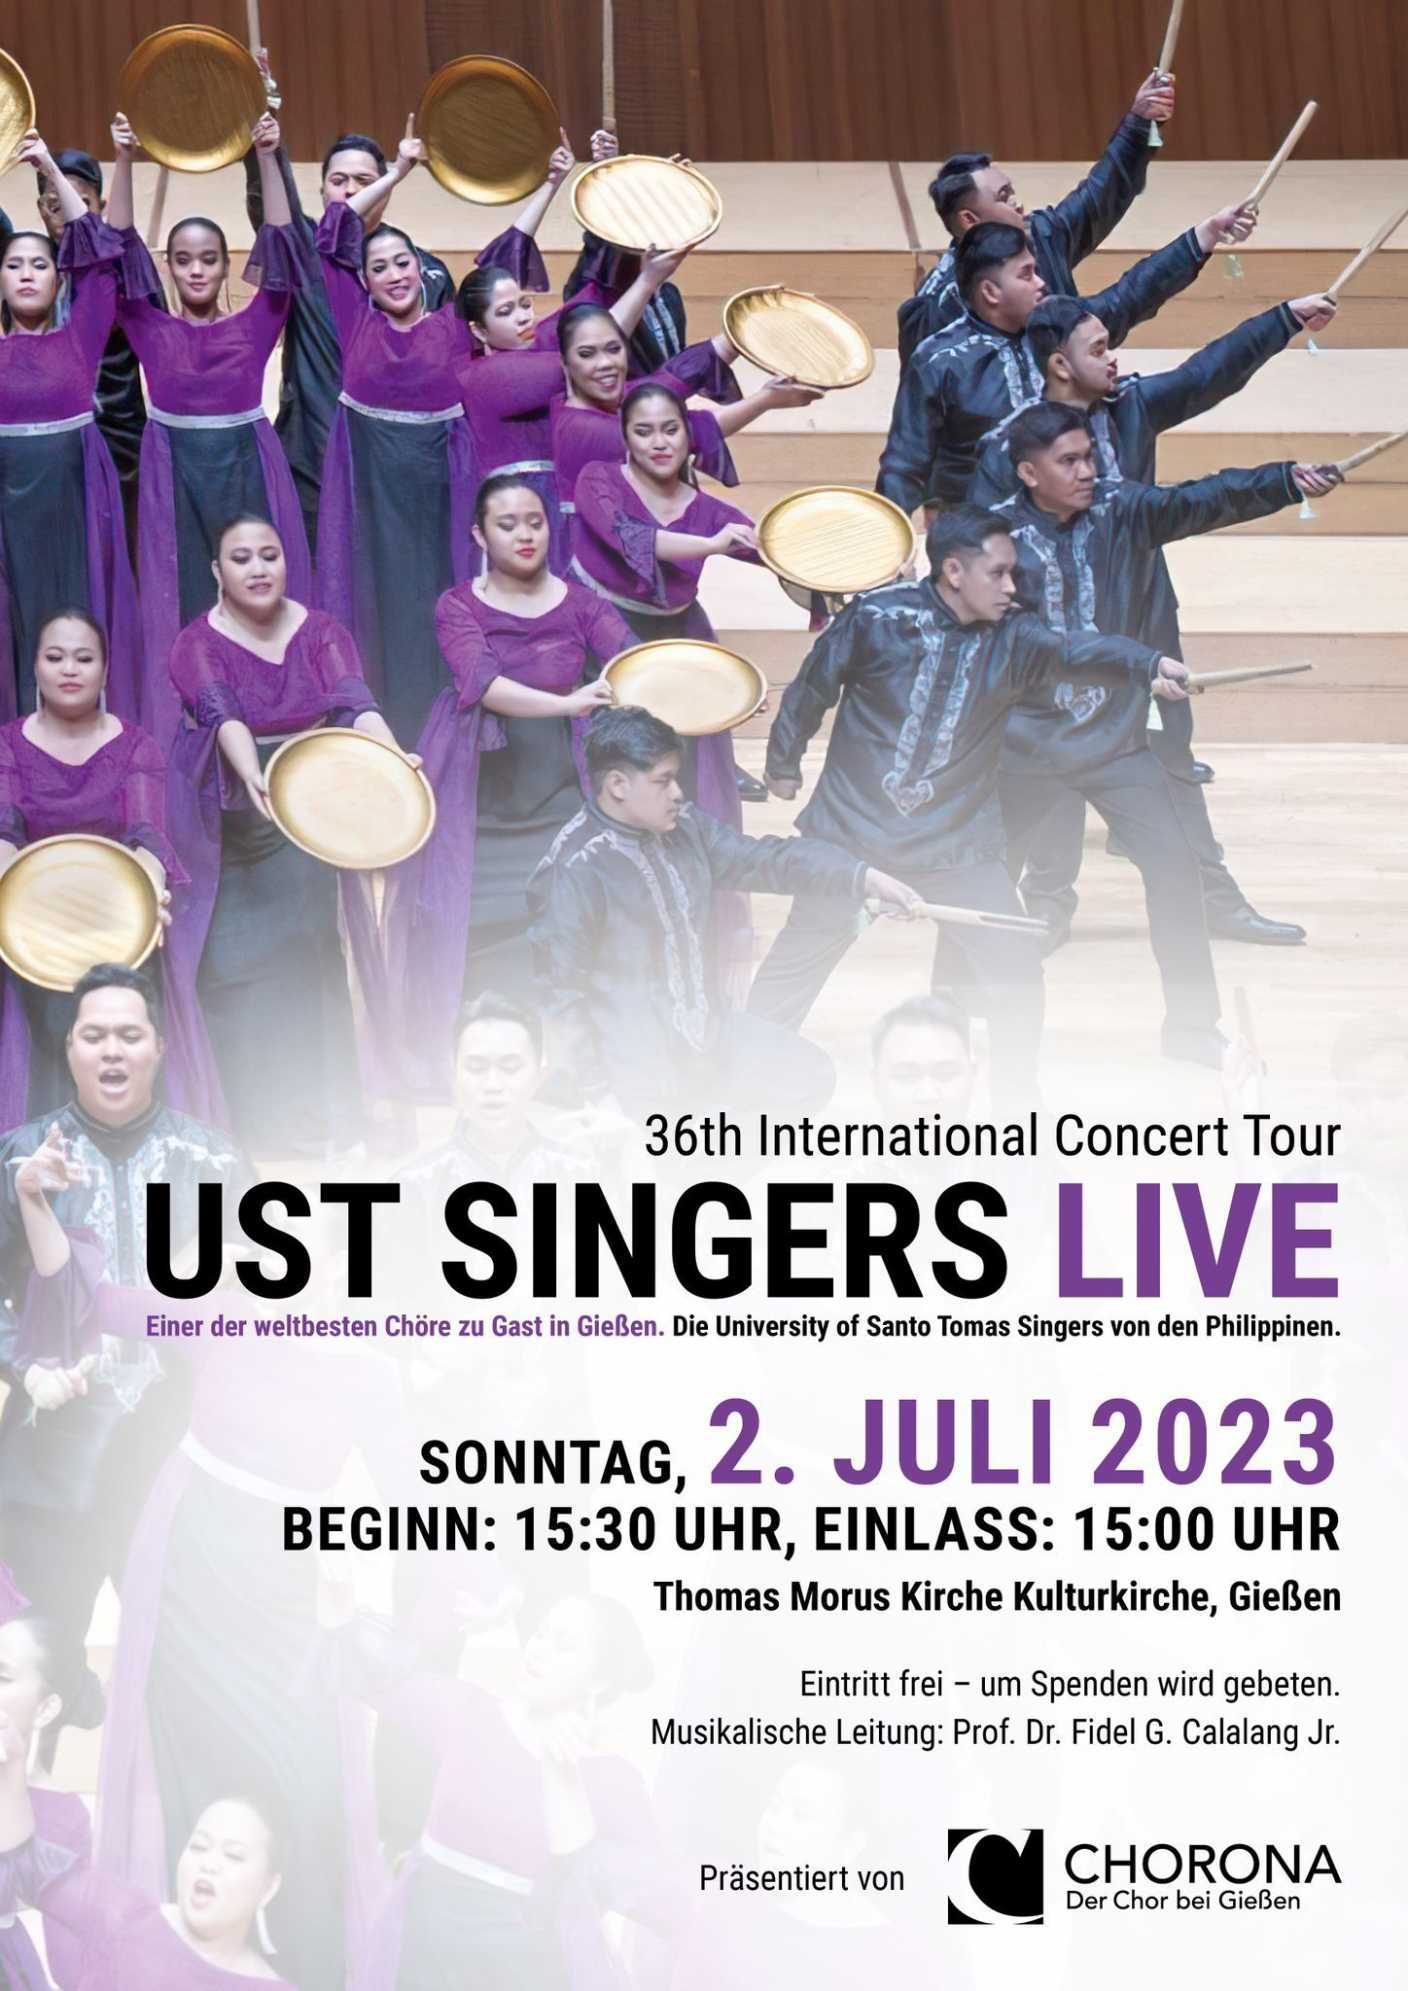 UST SINGERS sind am 2. Juli im Rahmen ihrer 36. Welttournee zu Gast in der Kulturkirche St. Thomas Morus (c) CHORONA BUSECK e.V.